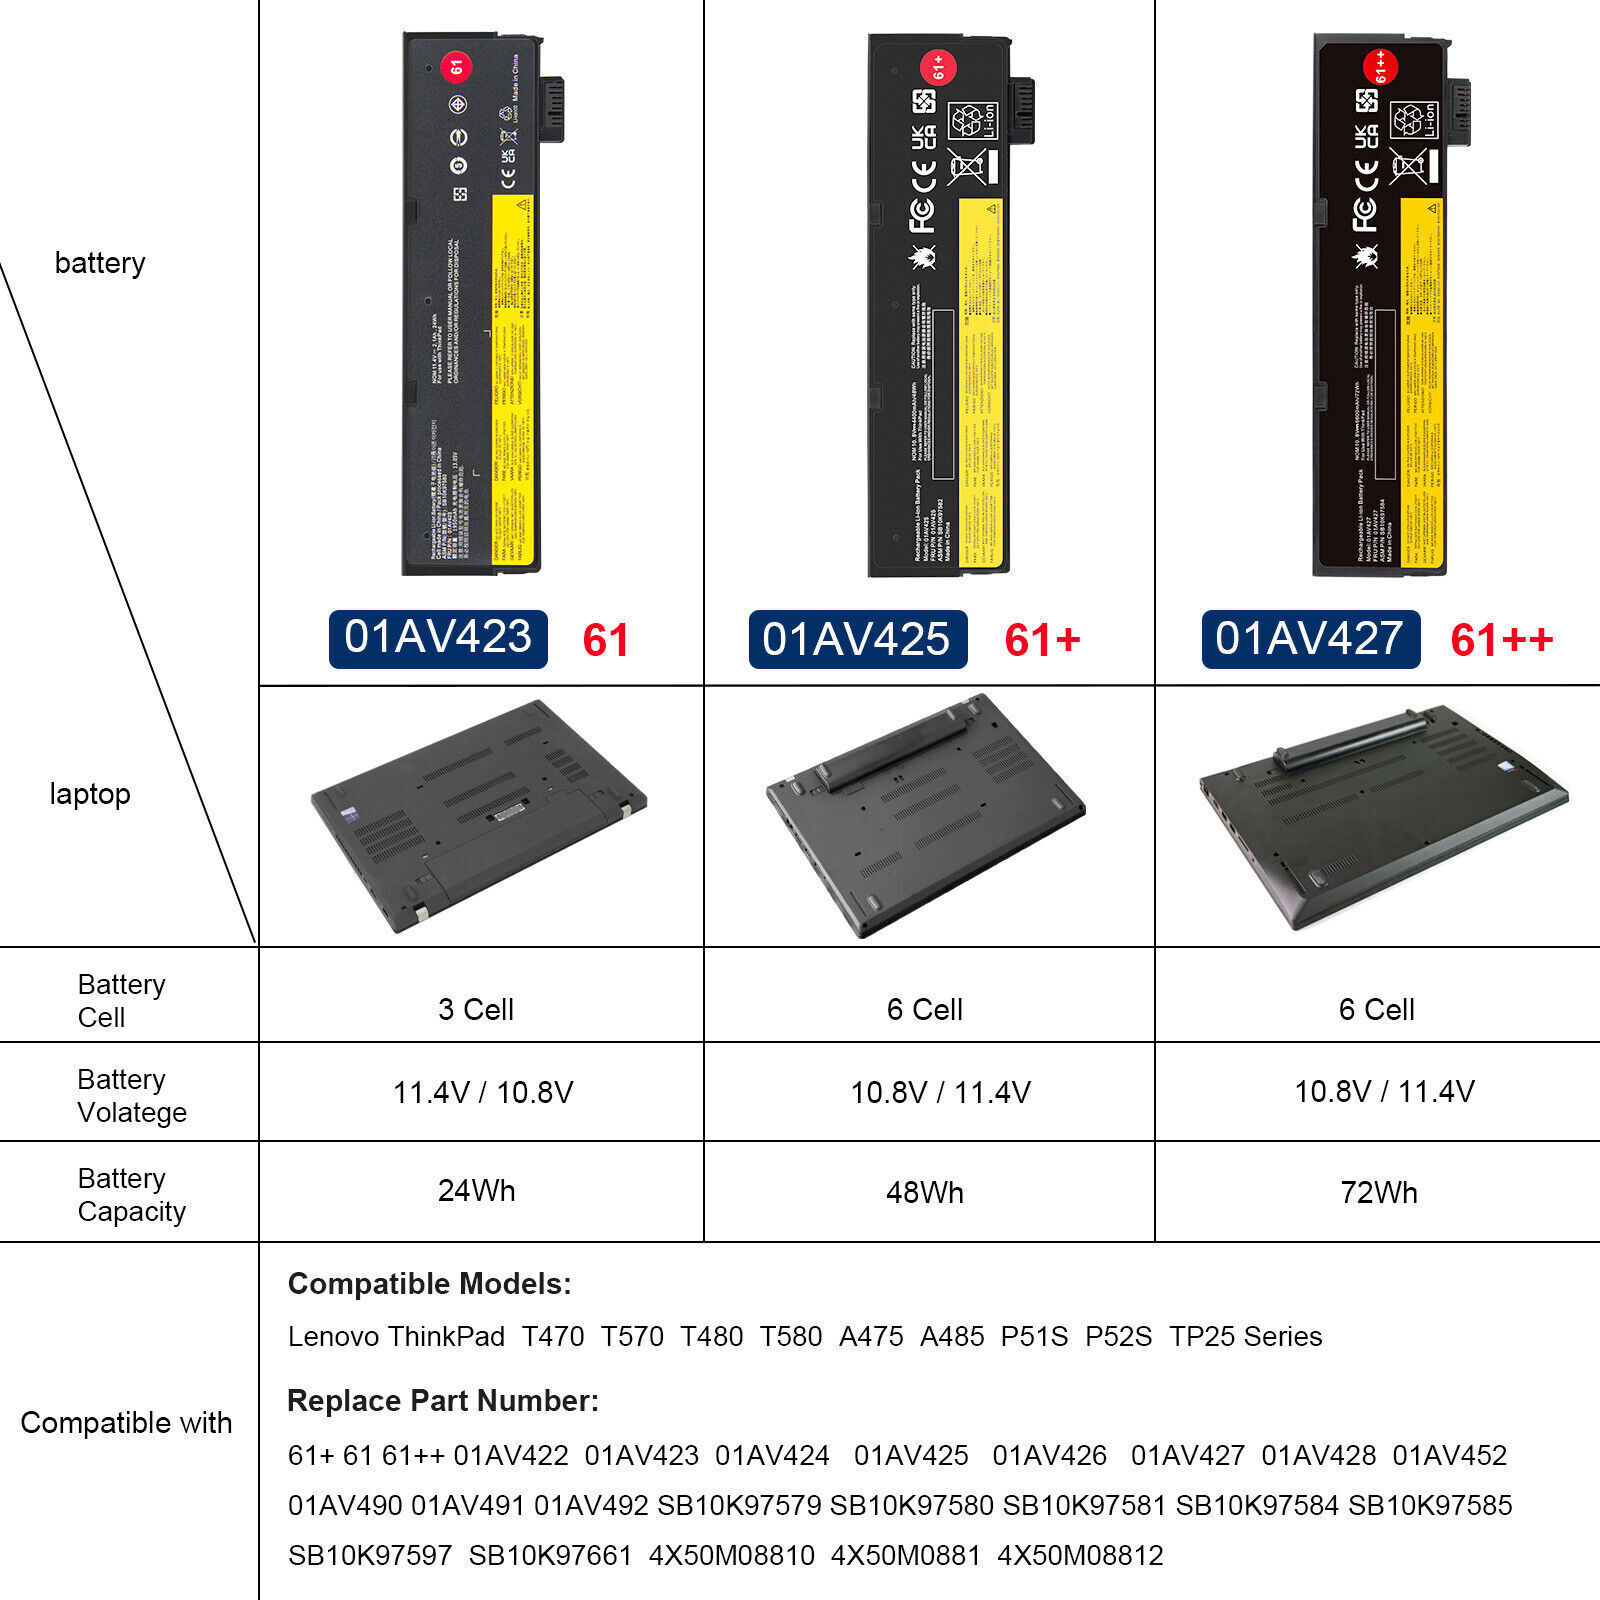 72Wh Battery Genuine for Lenovo ThinkPad T470 T480 T570 P51S P52S 01AV427 61++